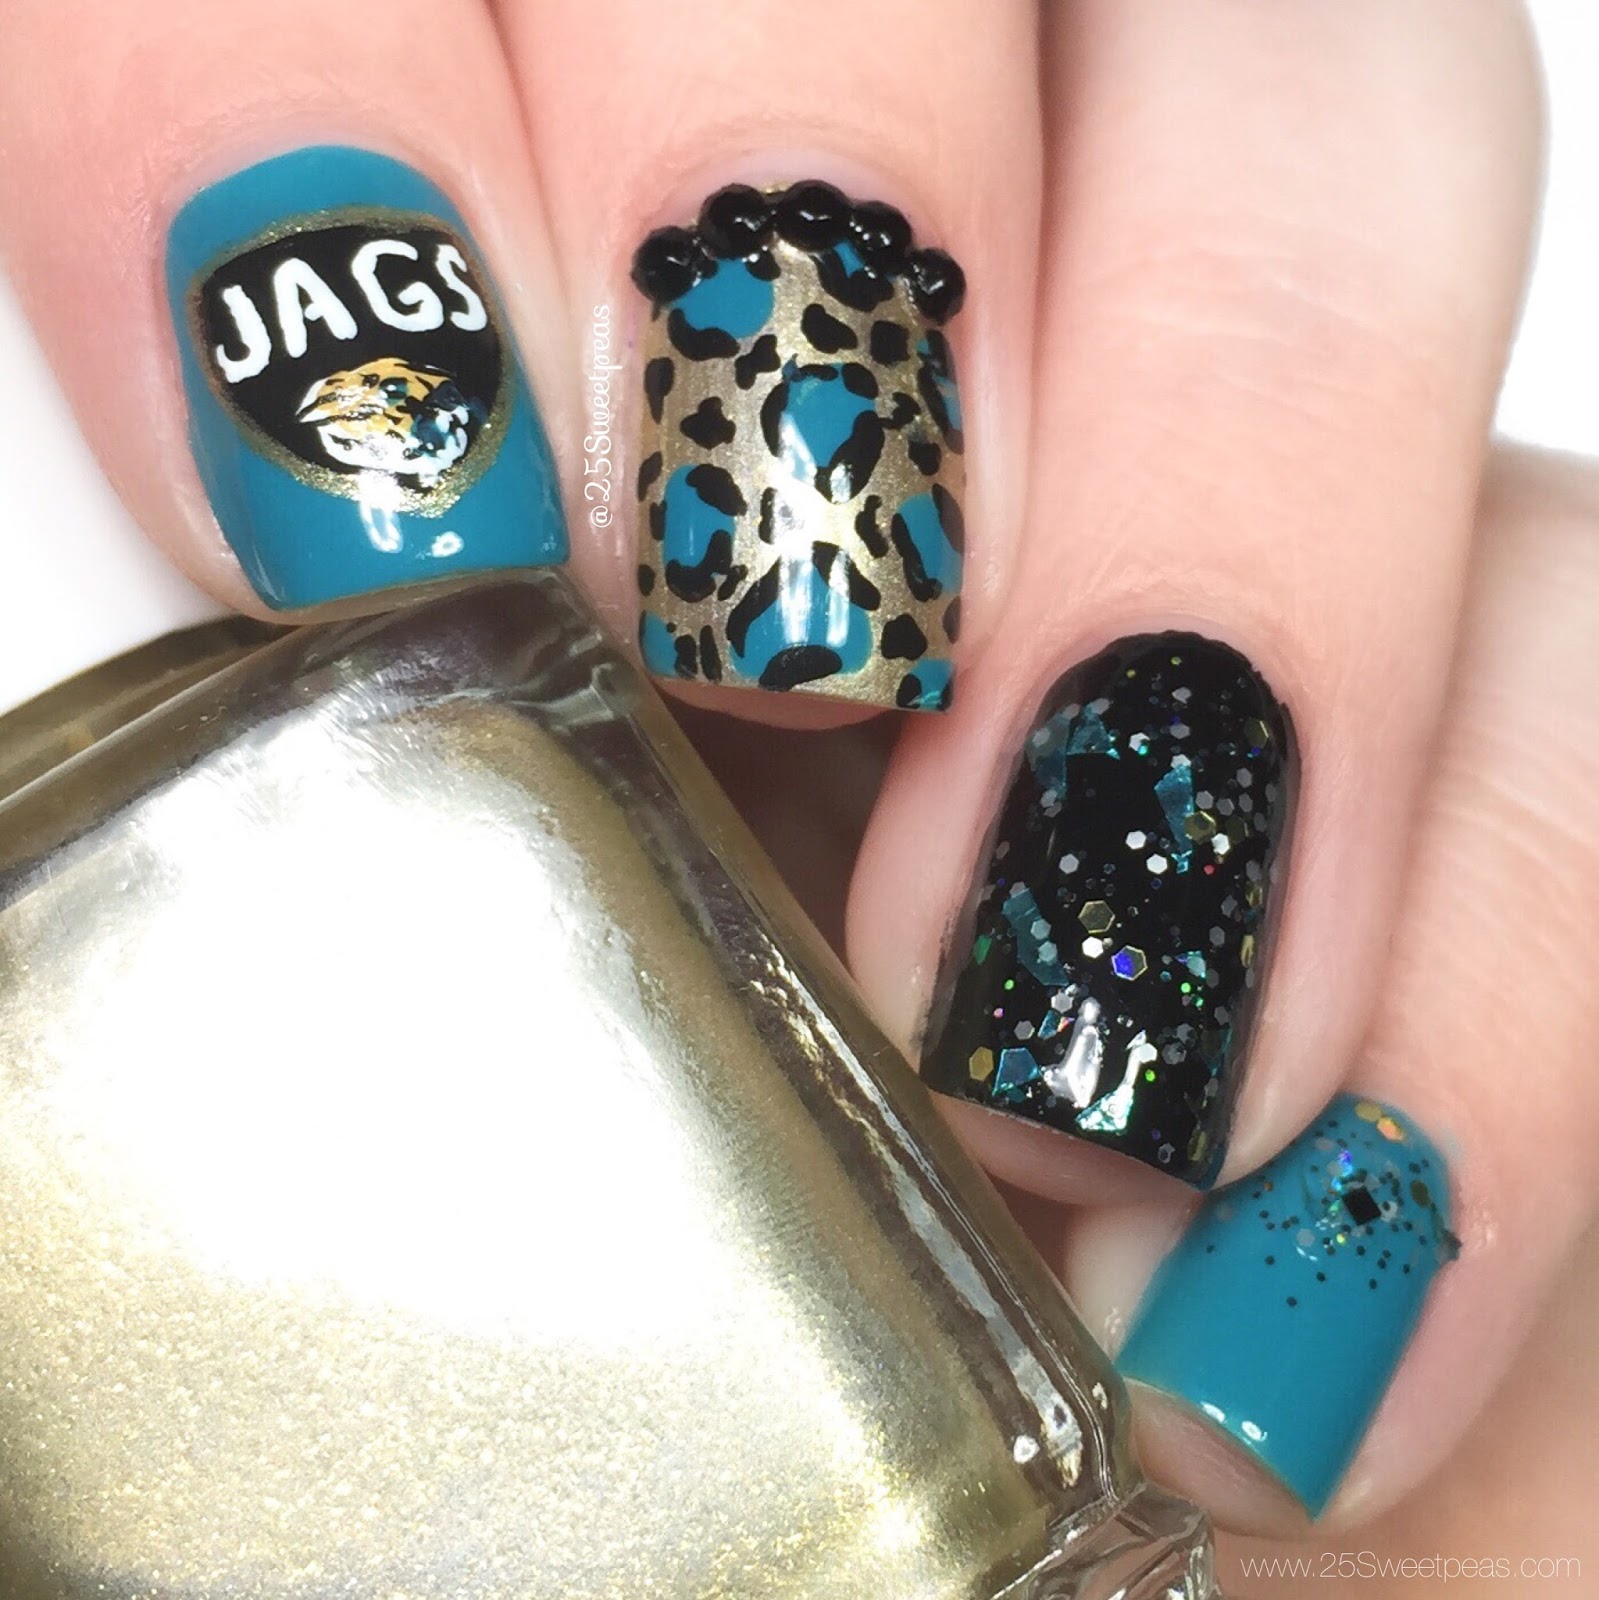 Jacksonville Jaguar Nail Art